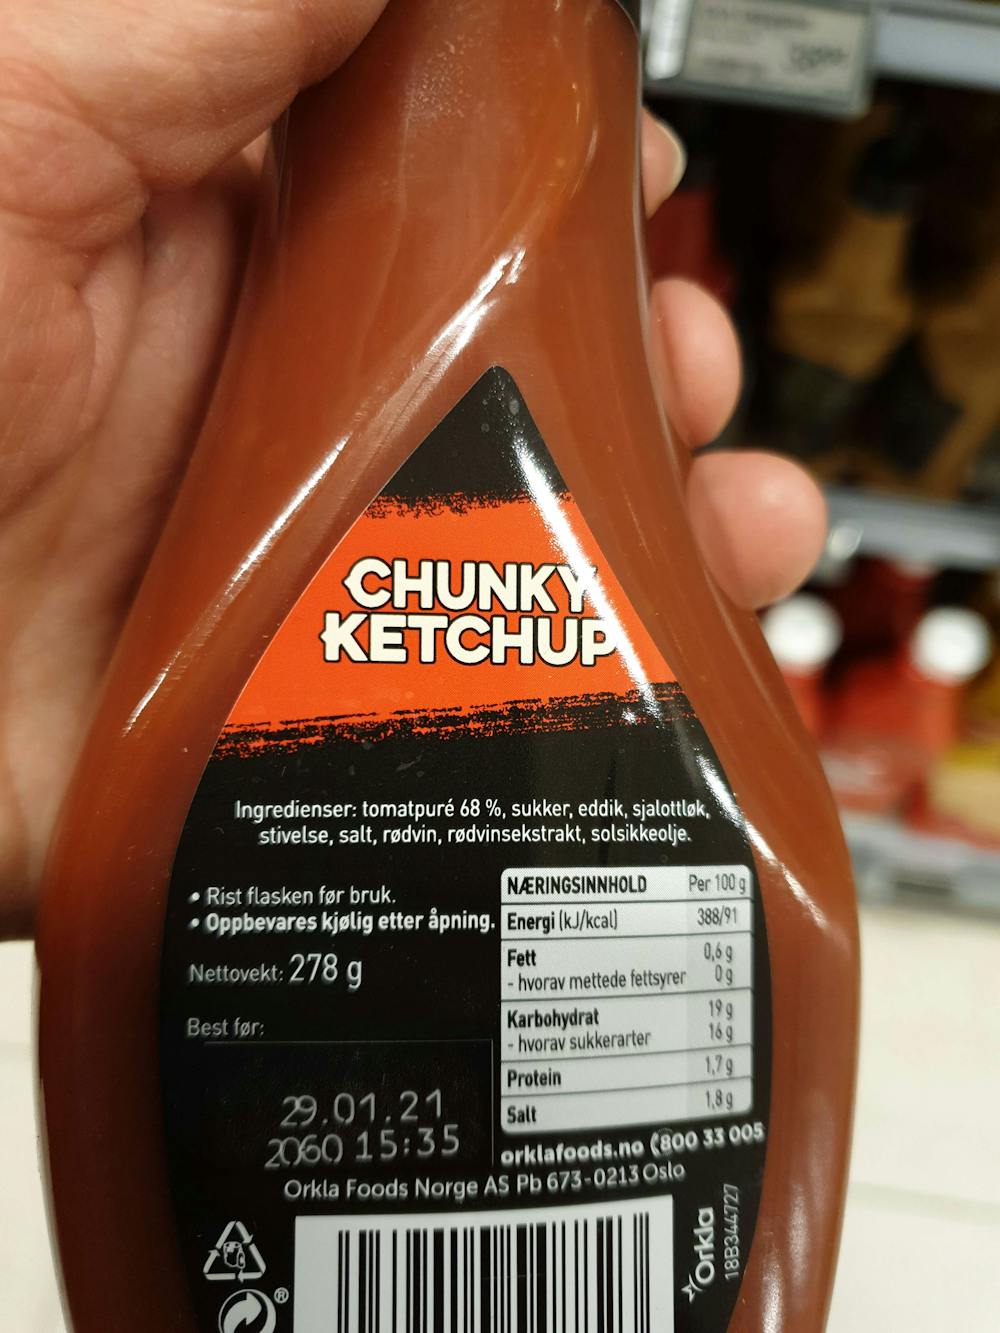 Ingredienslisten til Chunky ketchup, Idun